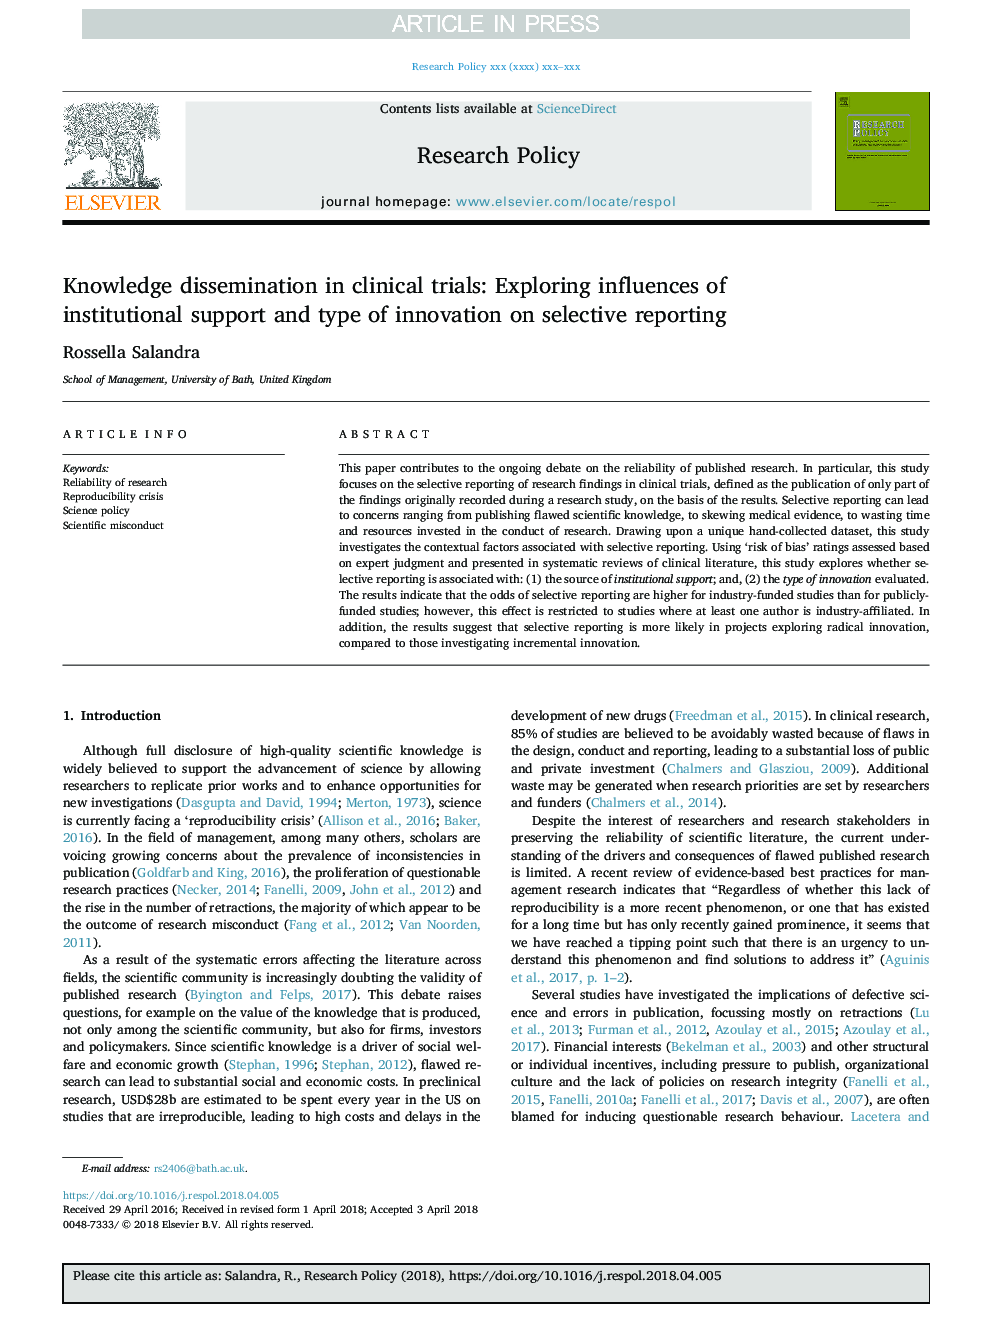 انتشار دانش در کارآزمایی های بالینی: بررسی تأثیر حمایت های نهادی و نوع نوآوری در گزارش های انتخابی 